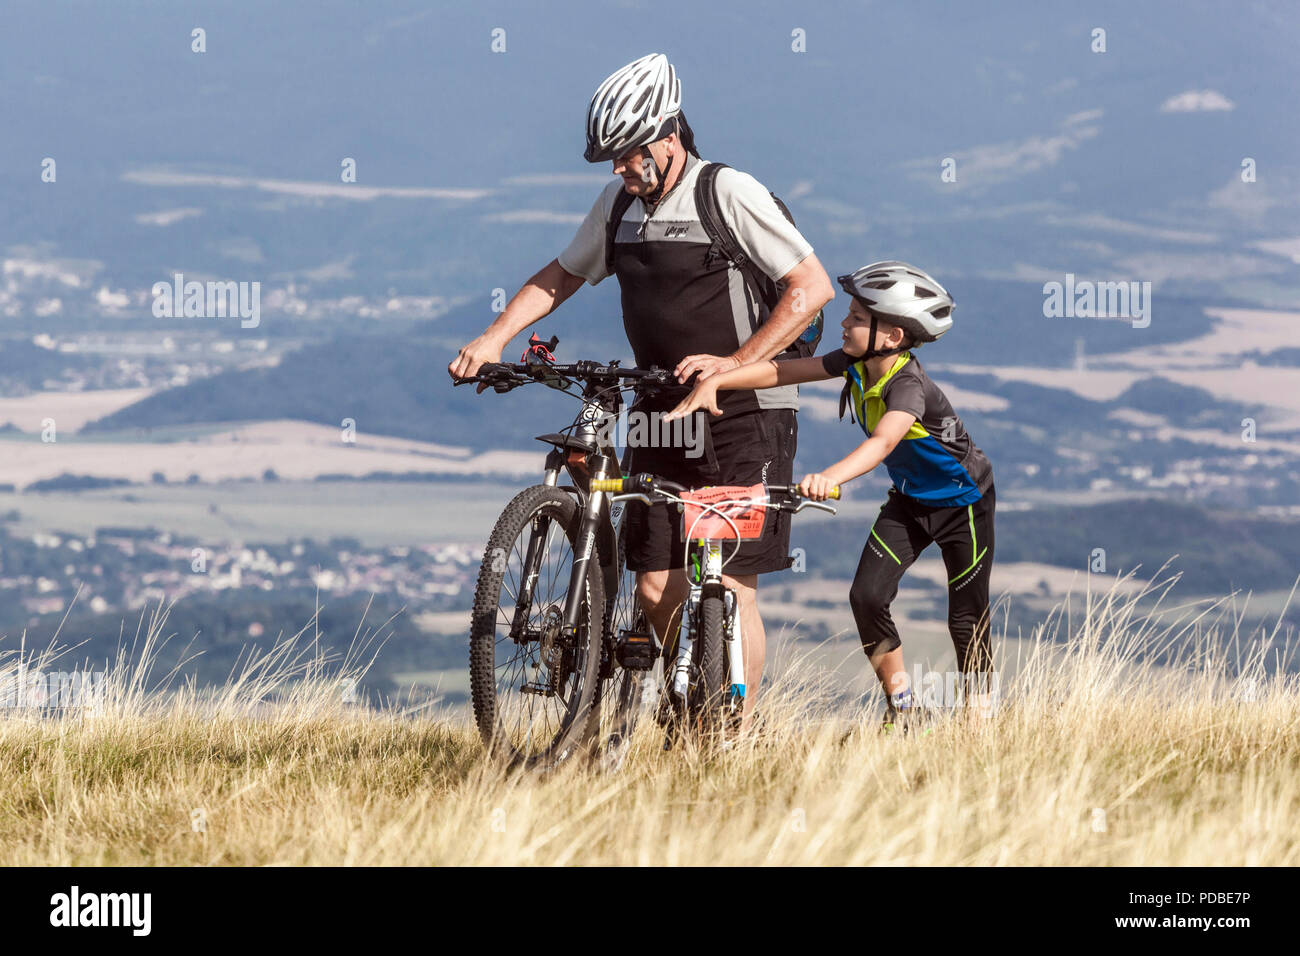 Motards vélo sur un sentier de montagne, Père et fils, Velka Javorina montagne, frontière slovaque tchèque dans les Carpates blanches Homme poussant vélo en montée Banque D'Images